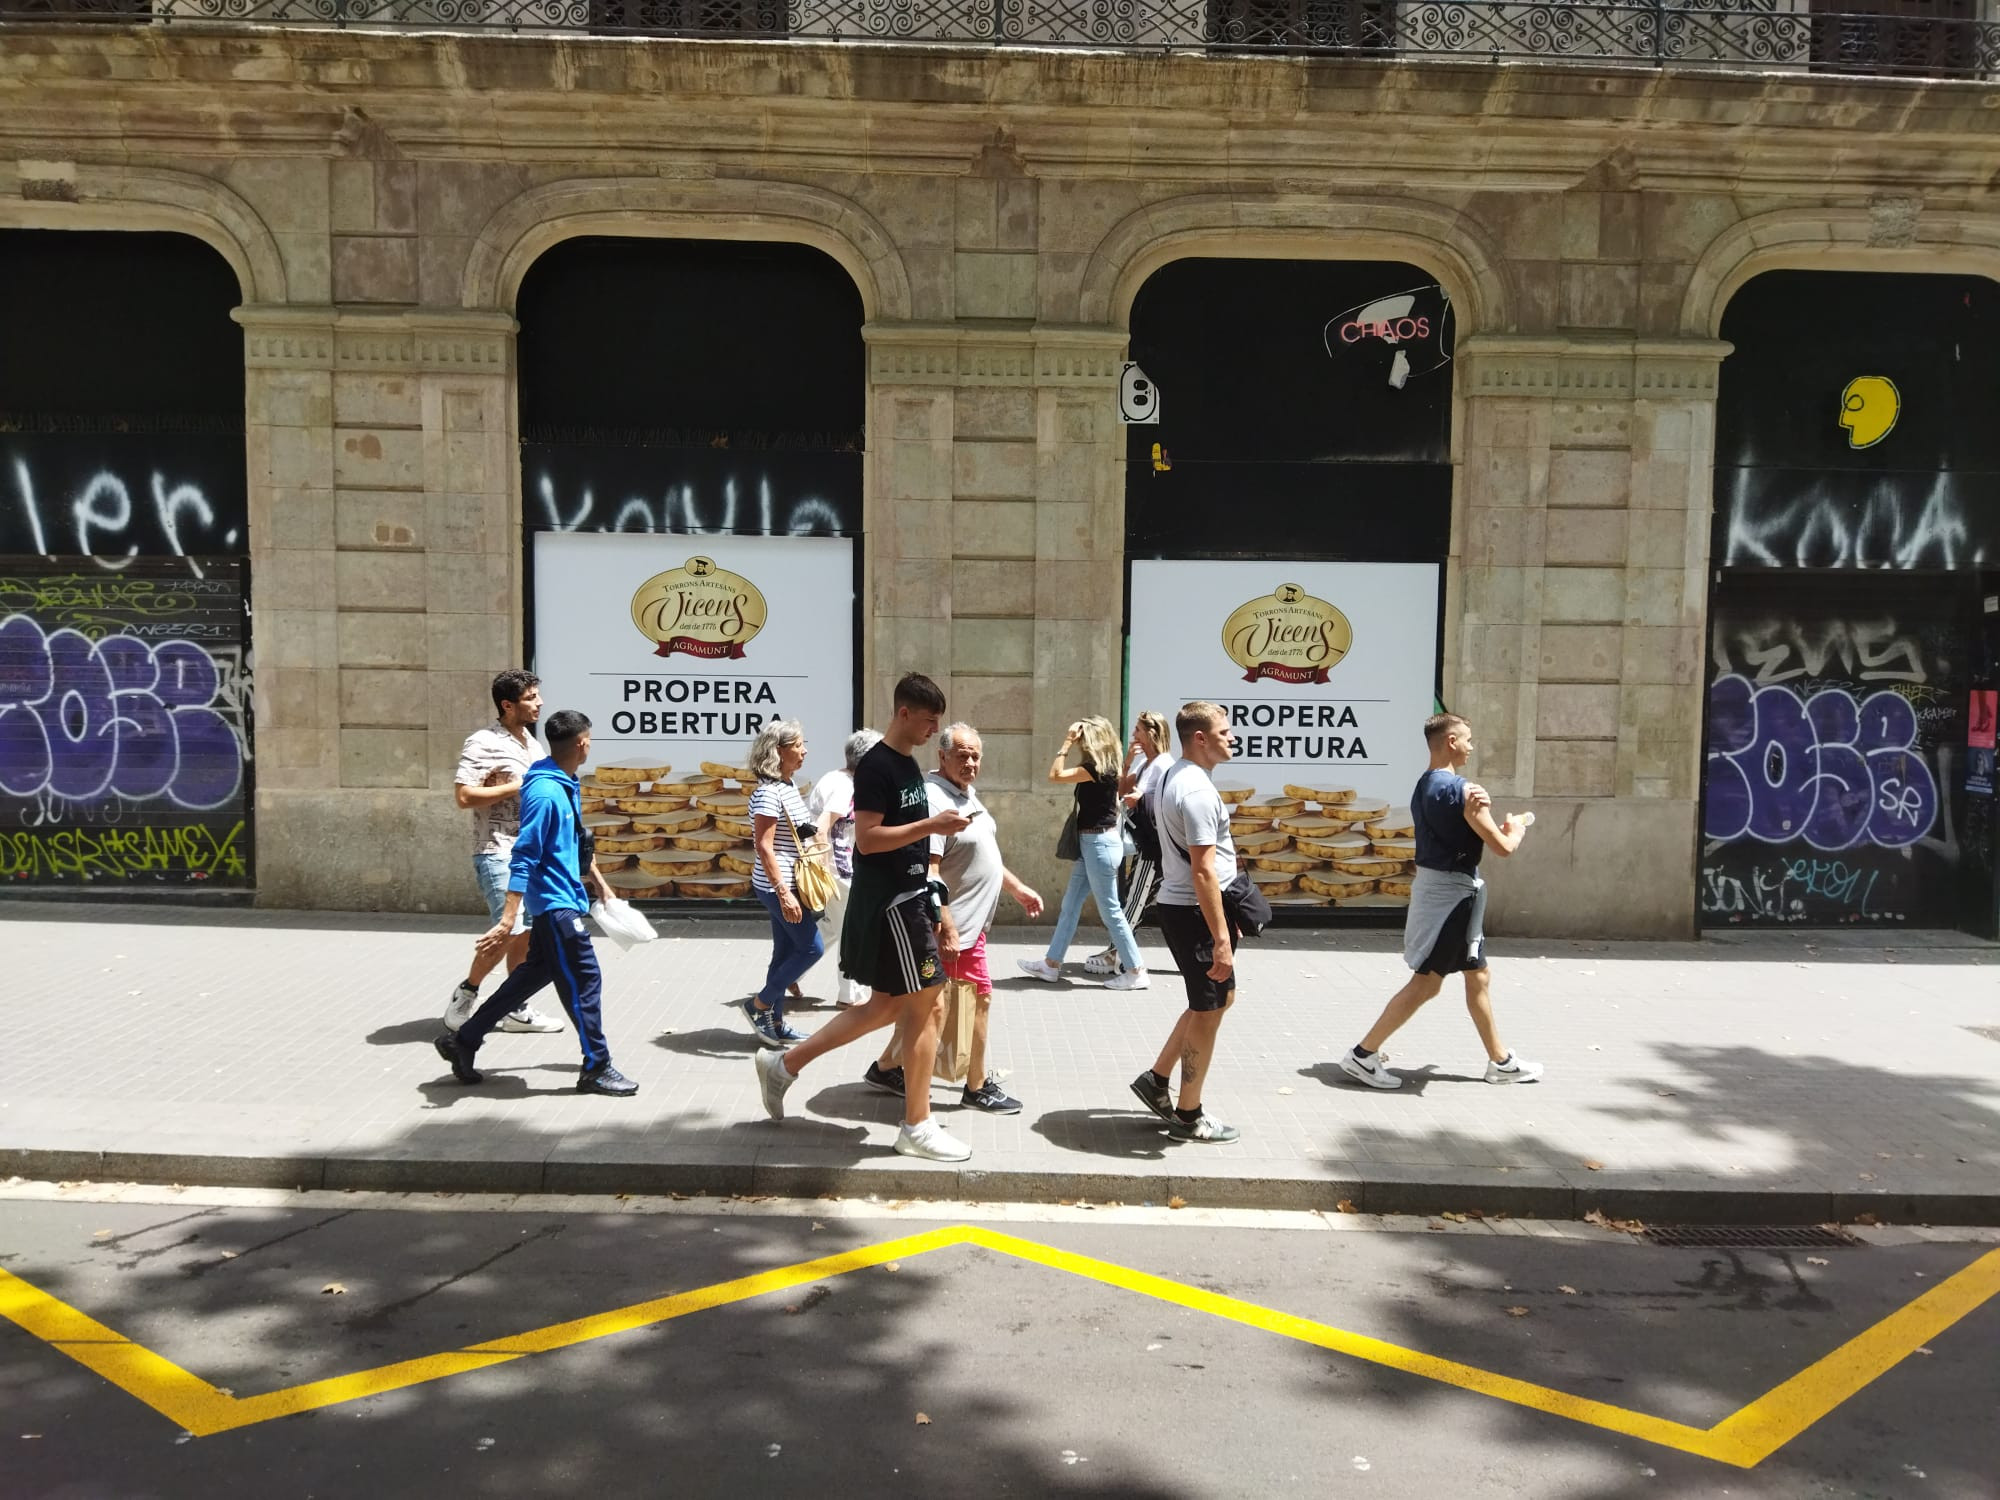 Un grupo de turistas pasa delante de la futura tienda de Torrons Vicens en la Rambla / METRÓPOLI - JORDI SUBIRANA